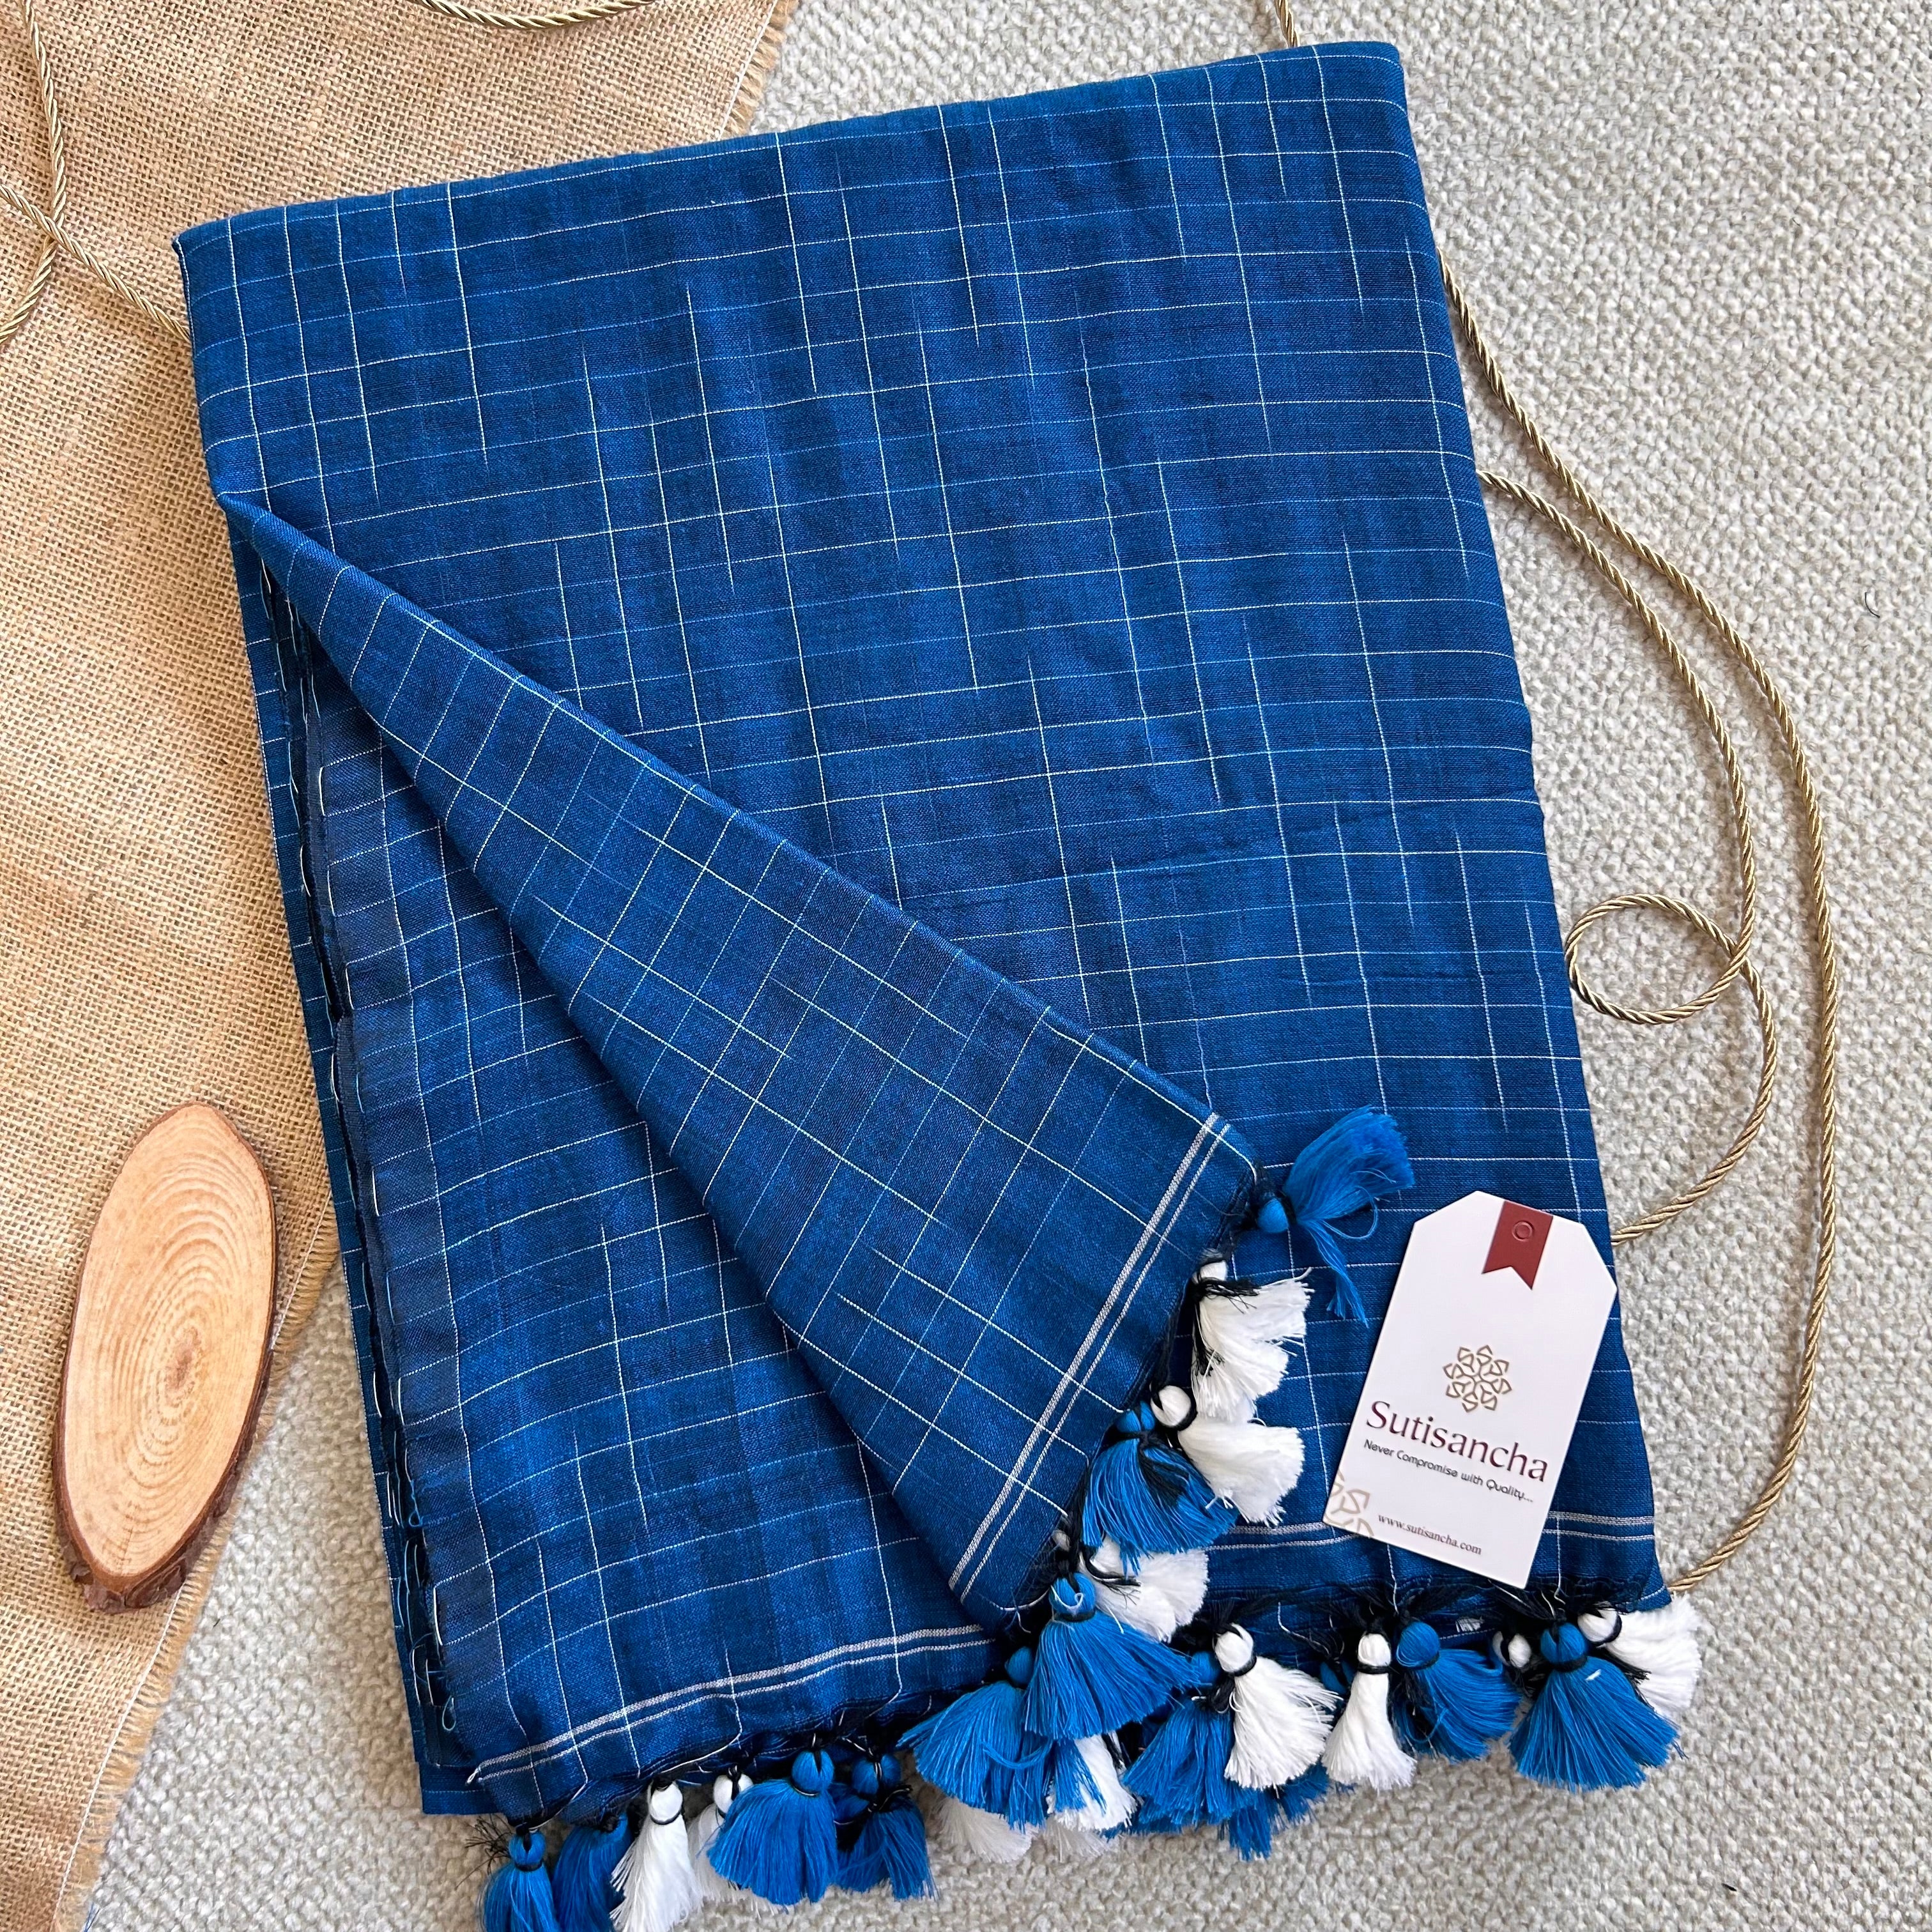 Sutisancha Azure Blue Cotton Saree with Trendy Kotki Checks Design